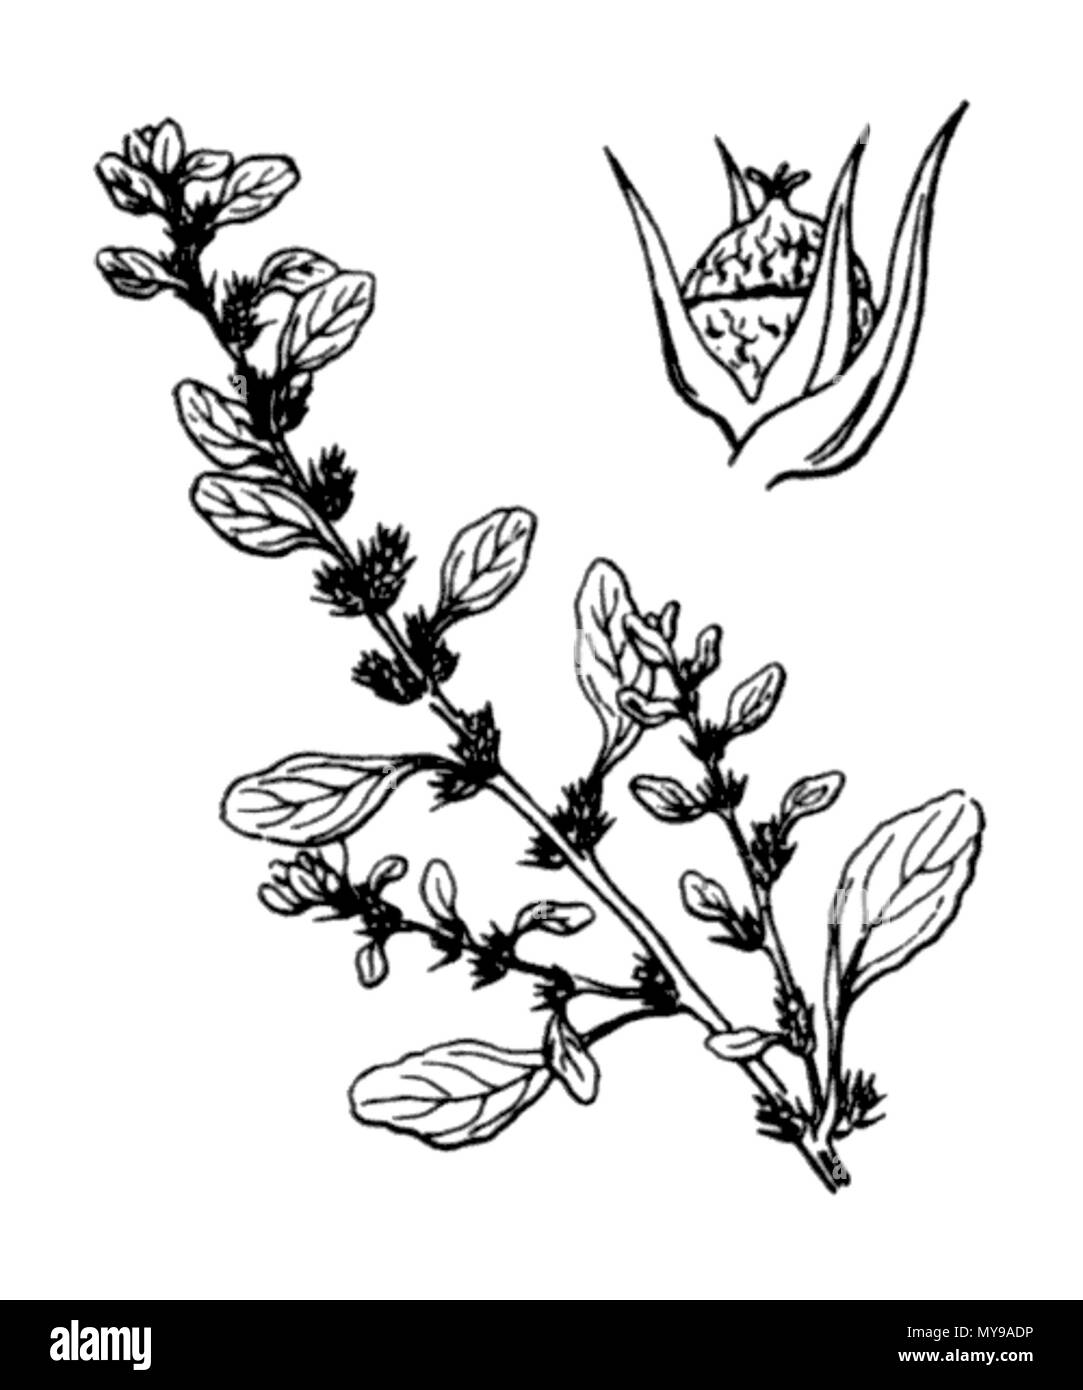 . English: (Gb)Prostate Pigweed, (Us)Tumble Pigweed (Amaranthus albus), an etching by Hippolyte Coste (1858-1924), Flore descriptive et illustrée de la France, de la Corse et des contrées limitrophes, published from 1900 to 1906 by Paul Klincksieck. Français : Amaranthe blanche (Amaranthus albus), gravure d'Hippolye Coste (1858-1924), Flore descriptive et illustrée de la France, de la Corse et des contrées limitrophes, publié de 1900 à 1906 aux éditions Paul Klincksieck. (Es)Bledo blanco, (It)Amaranto bianco, (Nl)Witte Amarant, (De)Weisser Fuchsschwanz . 30 June 2007. Hippolye Coste (1858-1924 Stock Photo